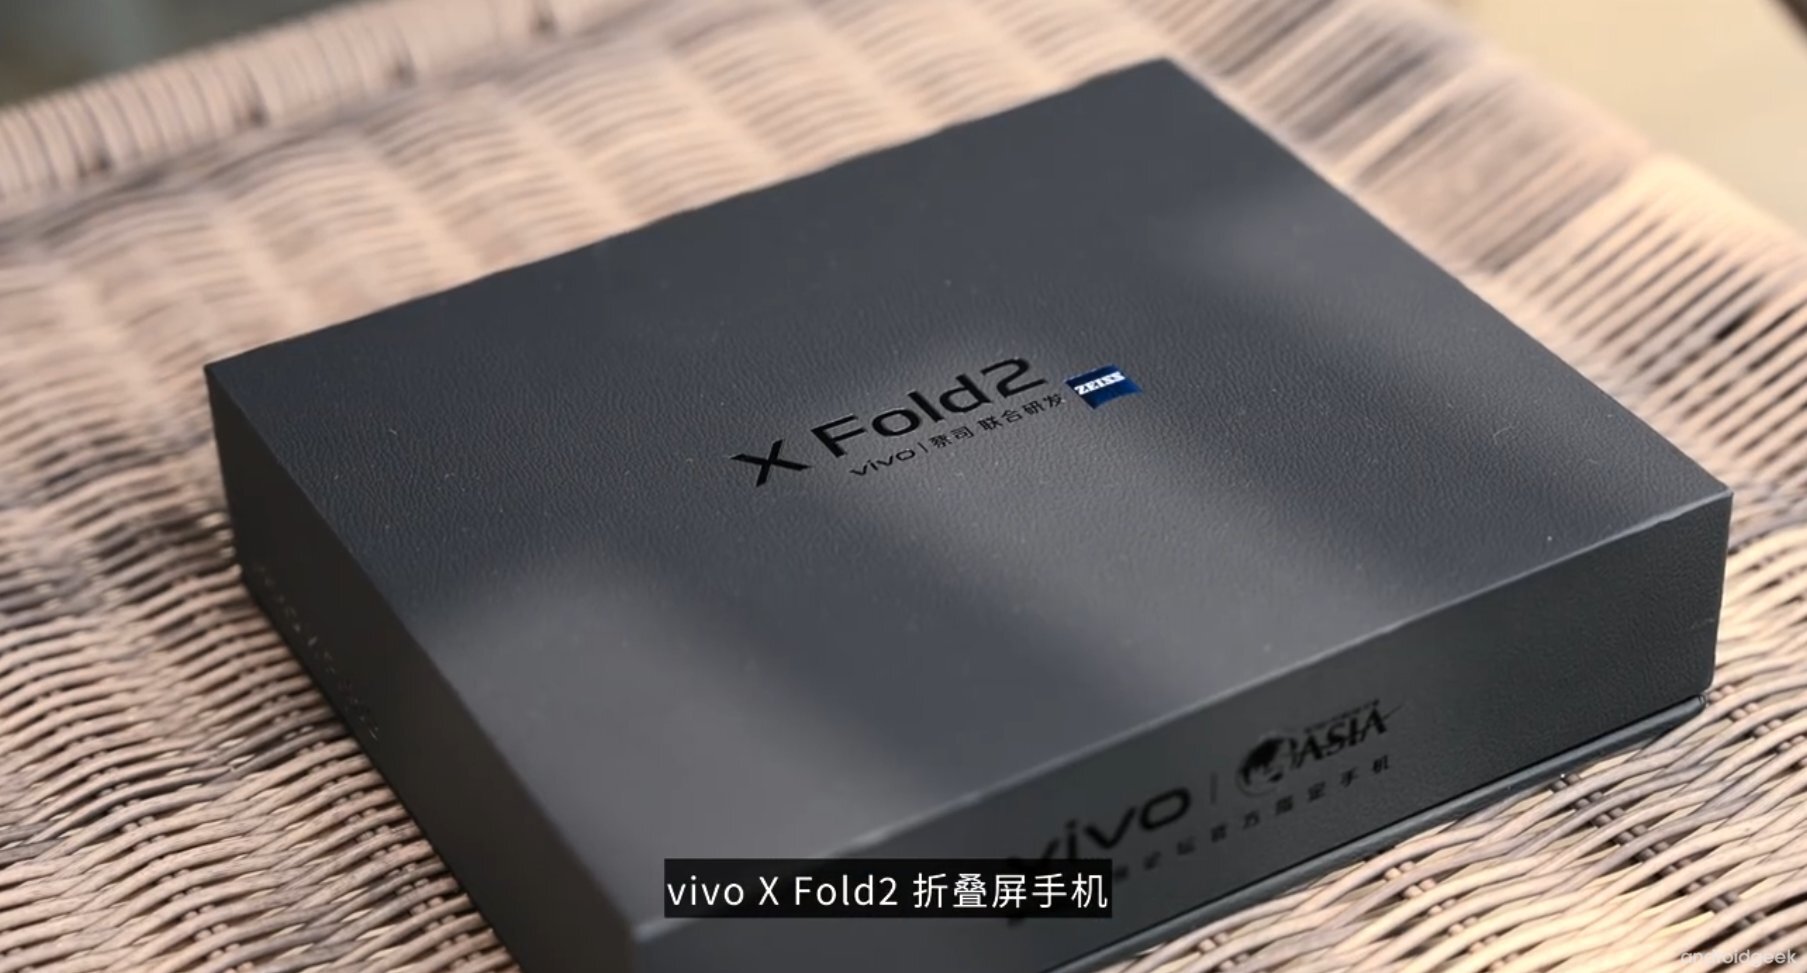 Vivo X Fold 2 foi totalmente revelado em video unboxing, antes do seu lançamento 5